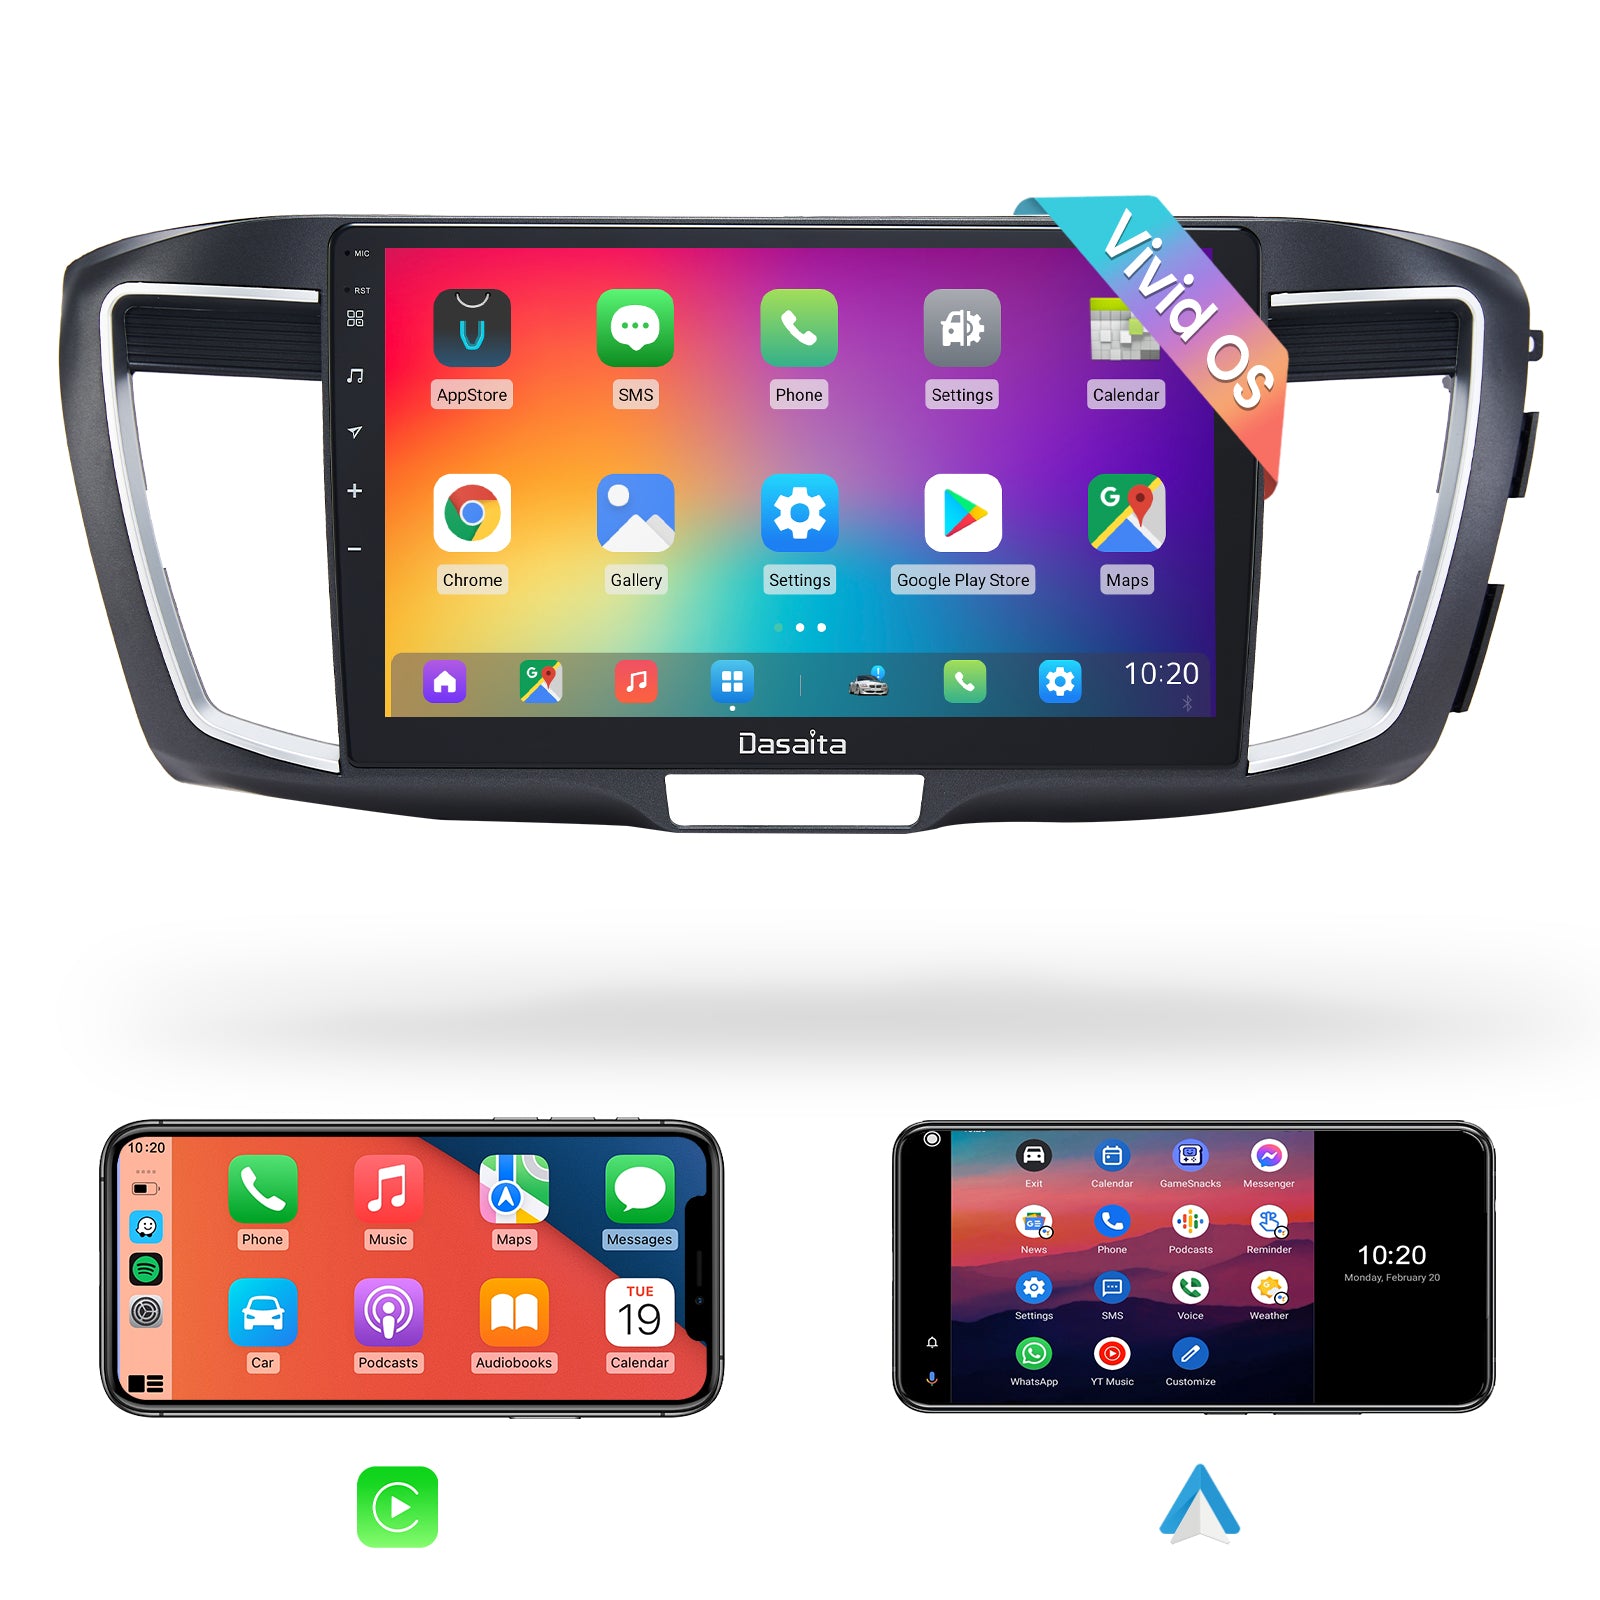 XTRONS Estéreo de coche para Ford Focus 2012-2017, Android 12 Octa Core  4GB+64GB Radio de coche, 9 pulgadas IPS pantalla táctil navegación GPS para